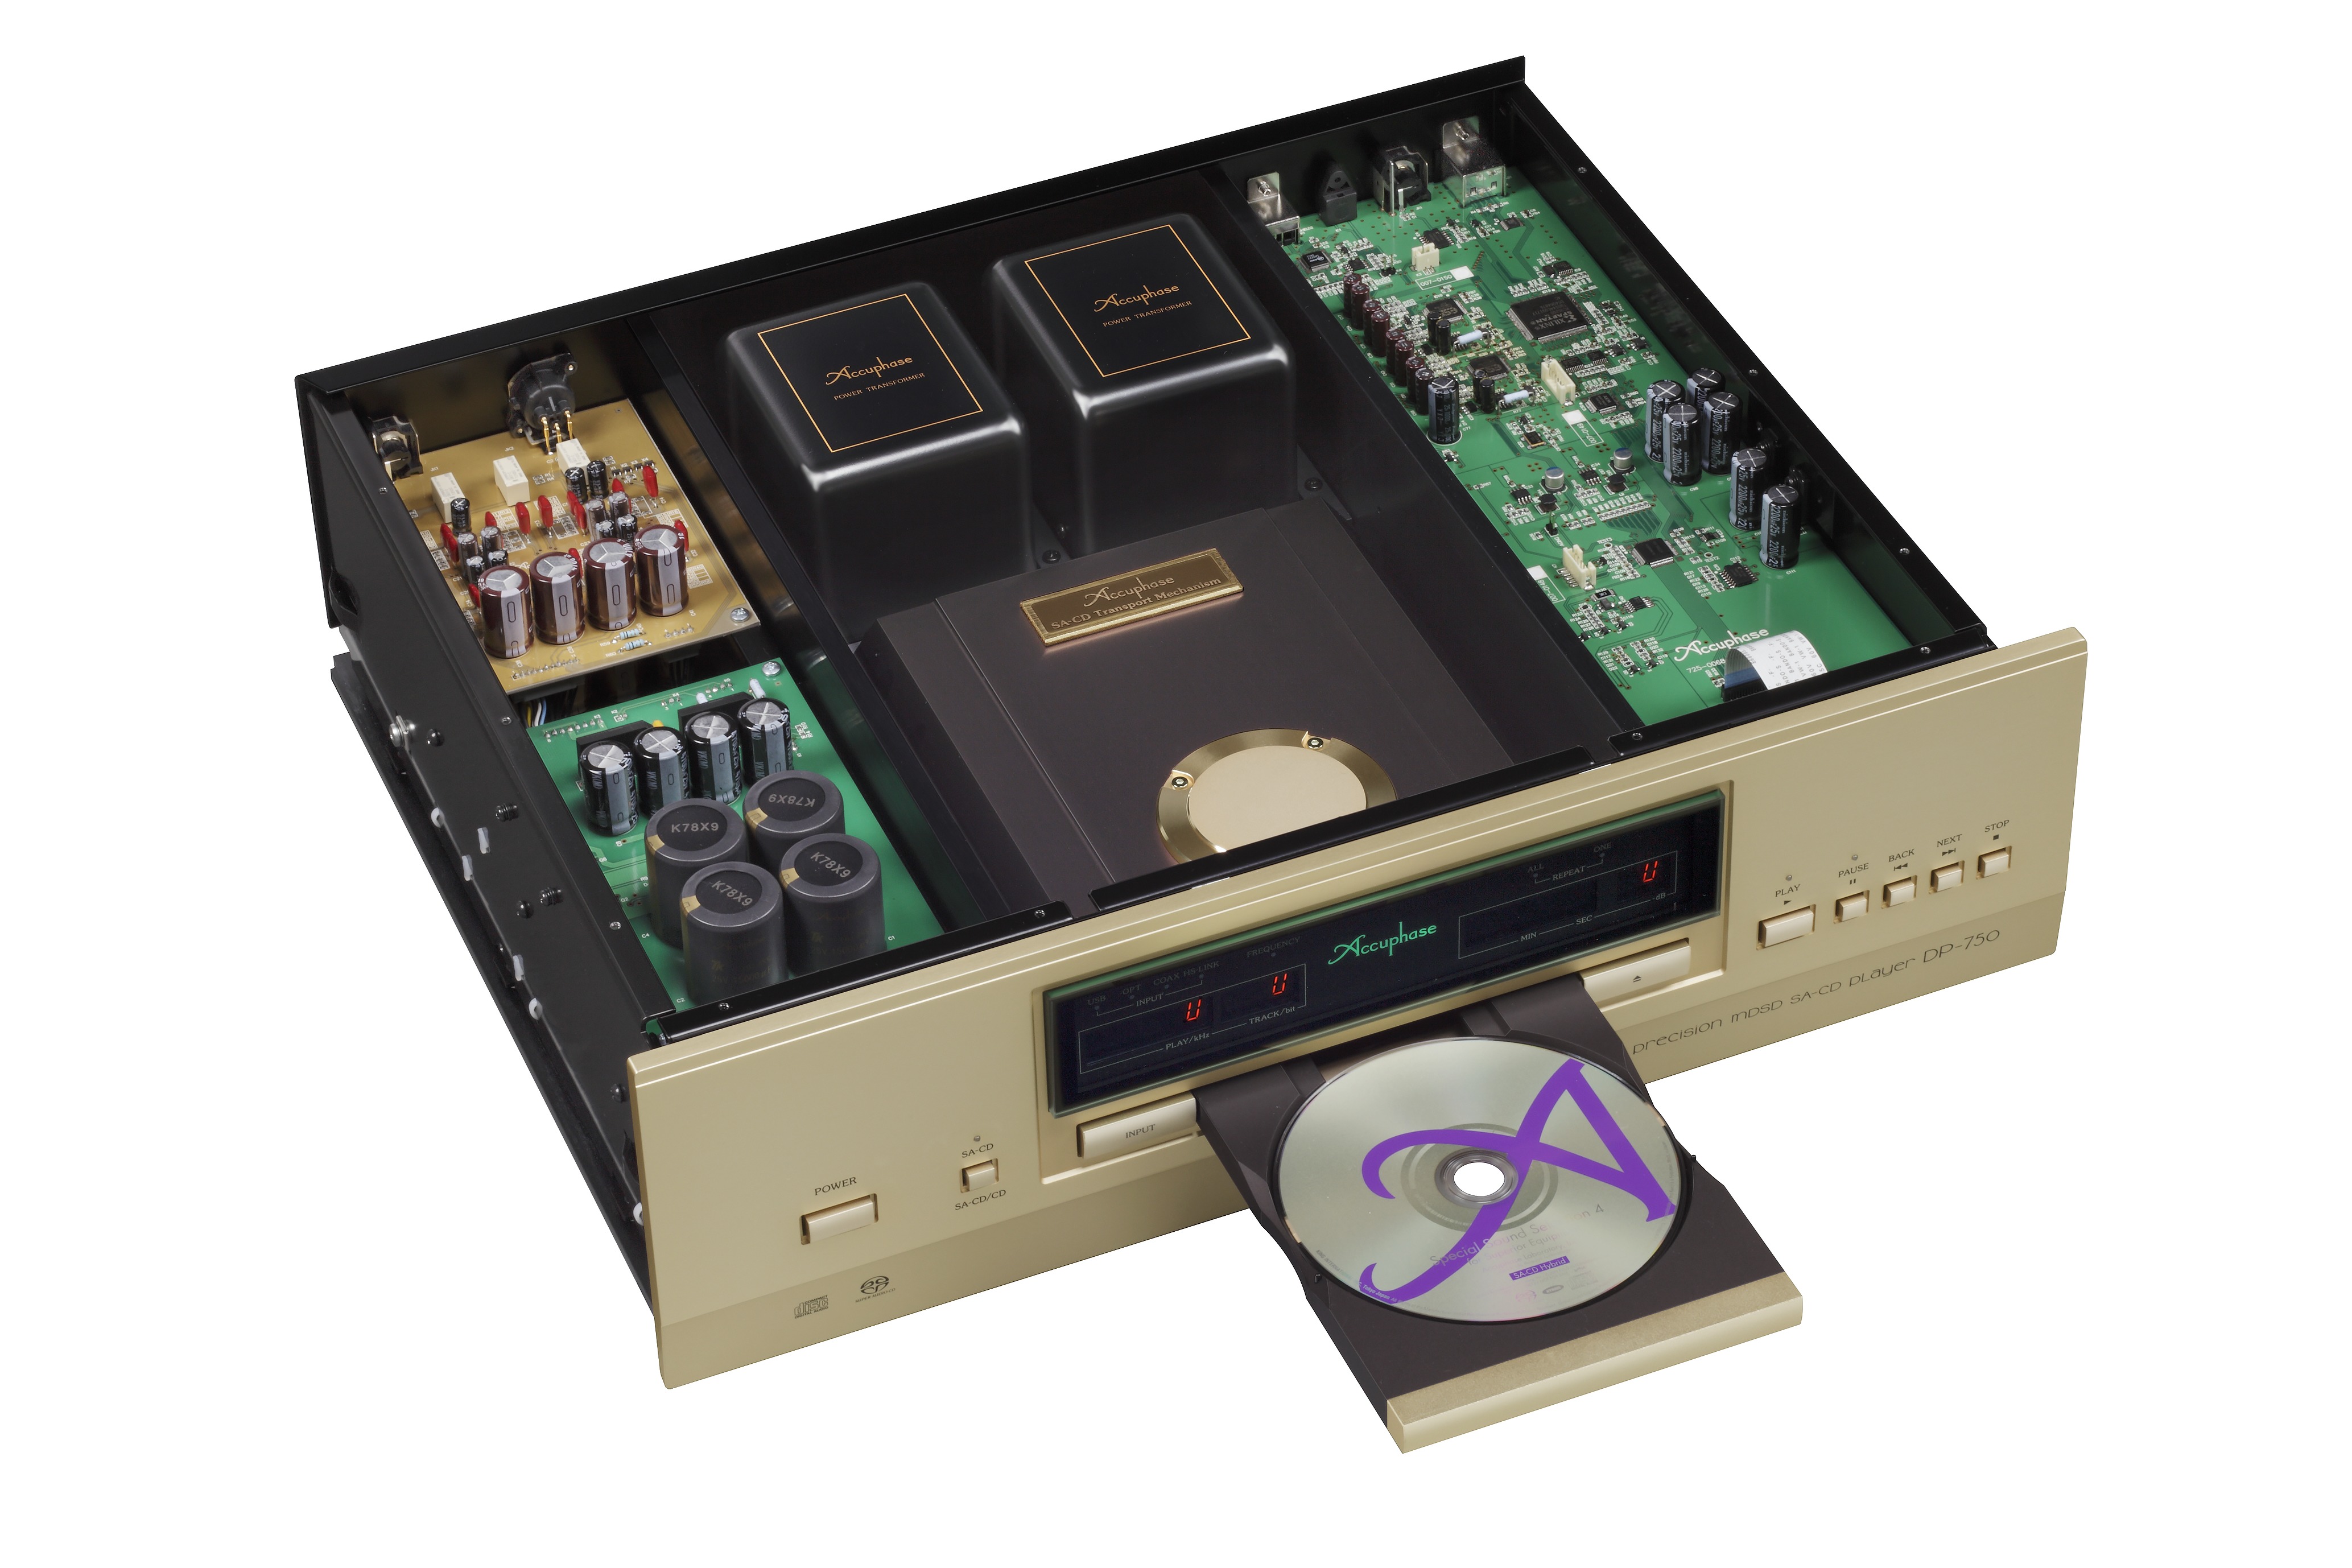 Accuphase DP-750 SACD/CD-Spieler mit geöffnetem Gehäuse und geöffnetem CD-Fach